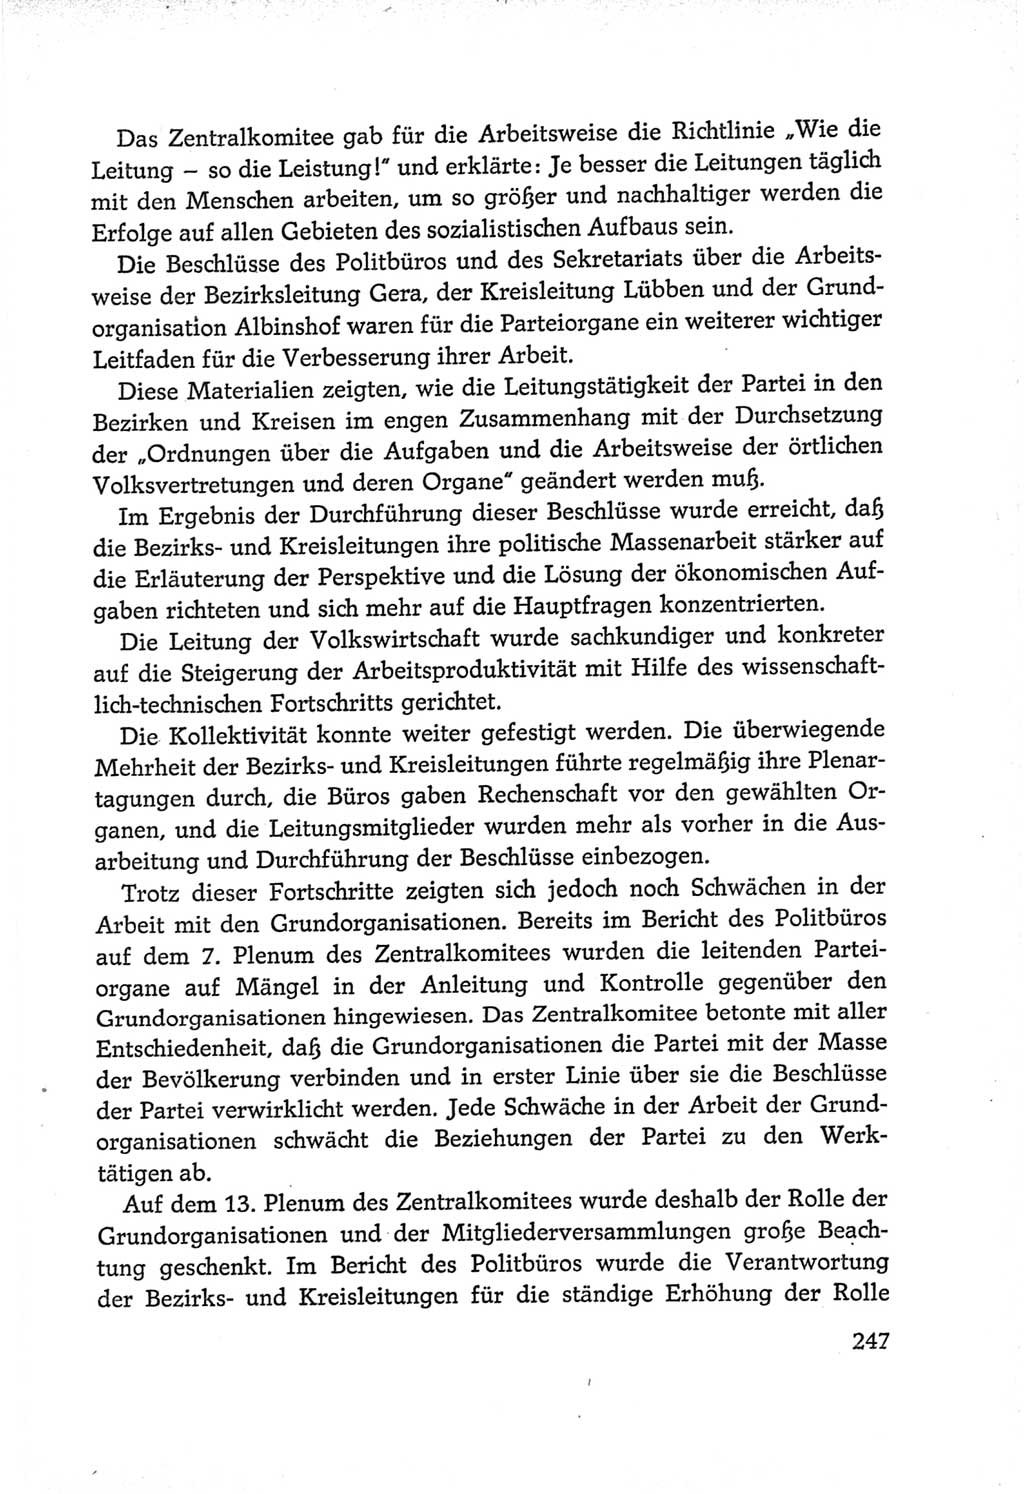 Protokoll der Verhandlungen des Ⅵ. Parteitages der Sozialistischen Einheitspartei Deutschlands (SED) [Deutsche Demokratische Republik (DDR)] 1963, Band Ⅳ, Seite 247 (Prot. Verh. Ⅵ. PT SED DDR 1963, Bd. Ⅳ, S. 247)